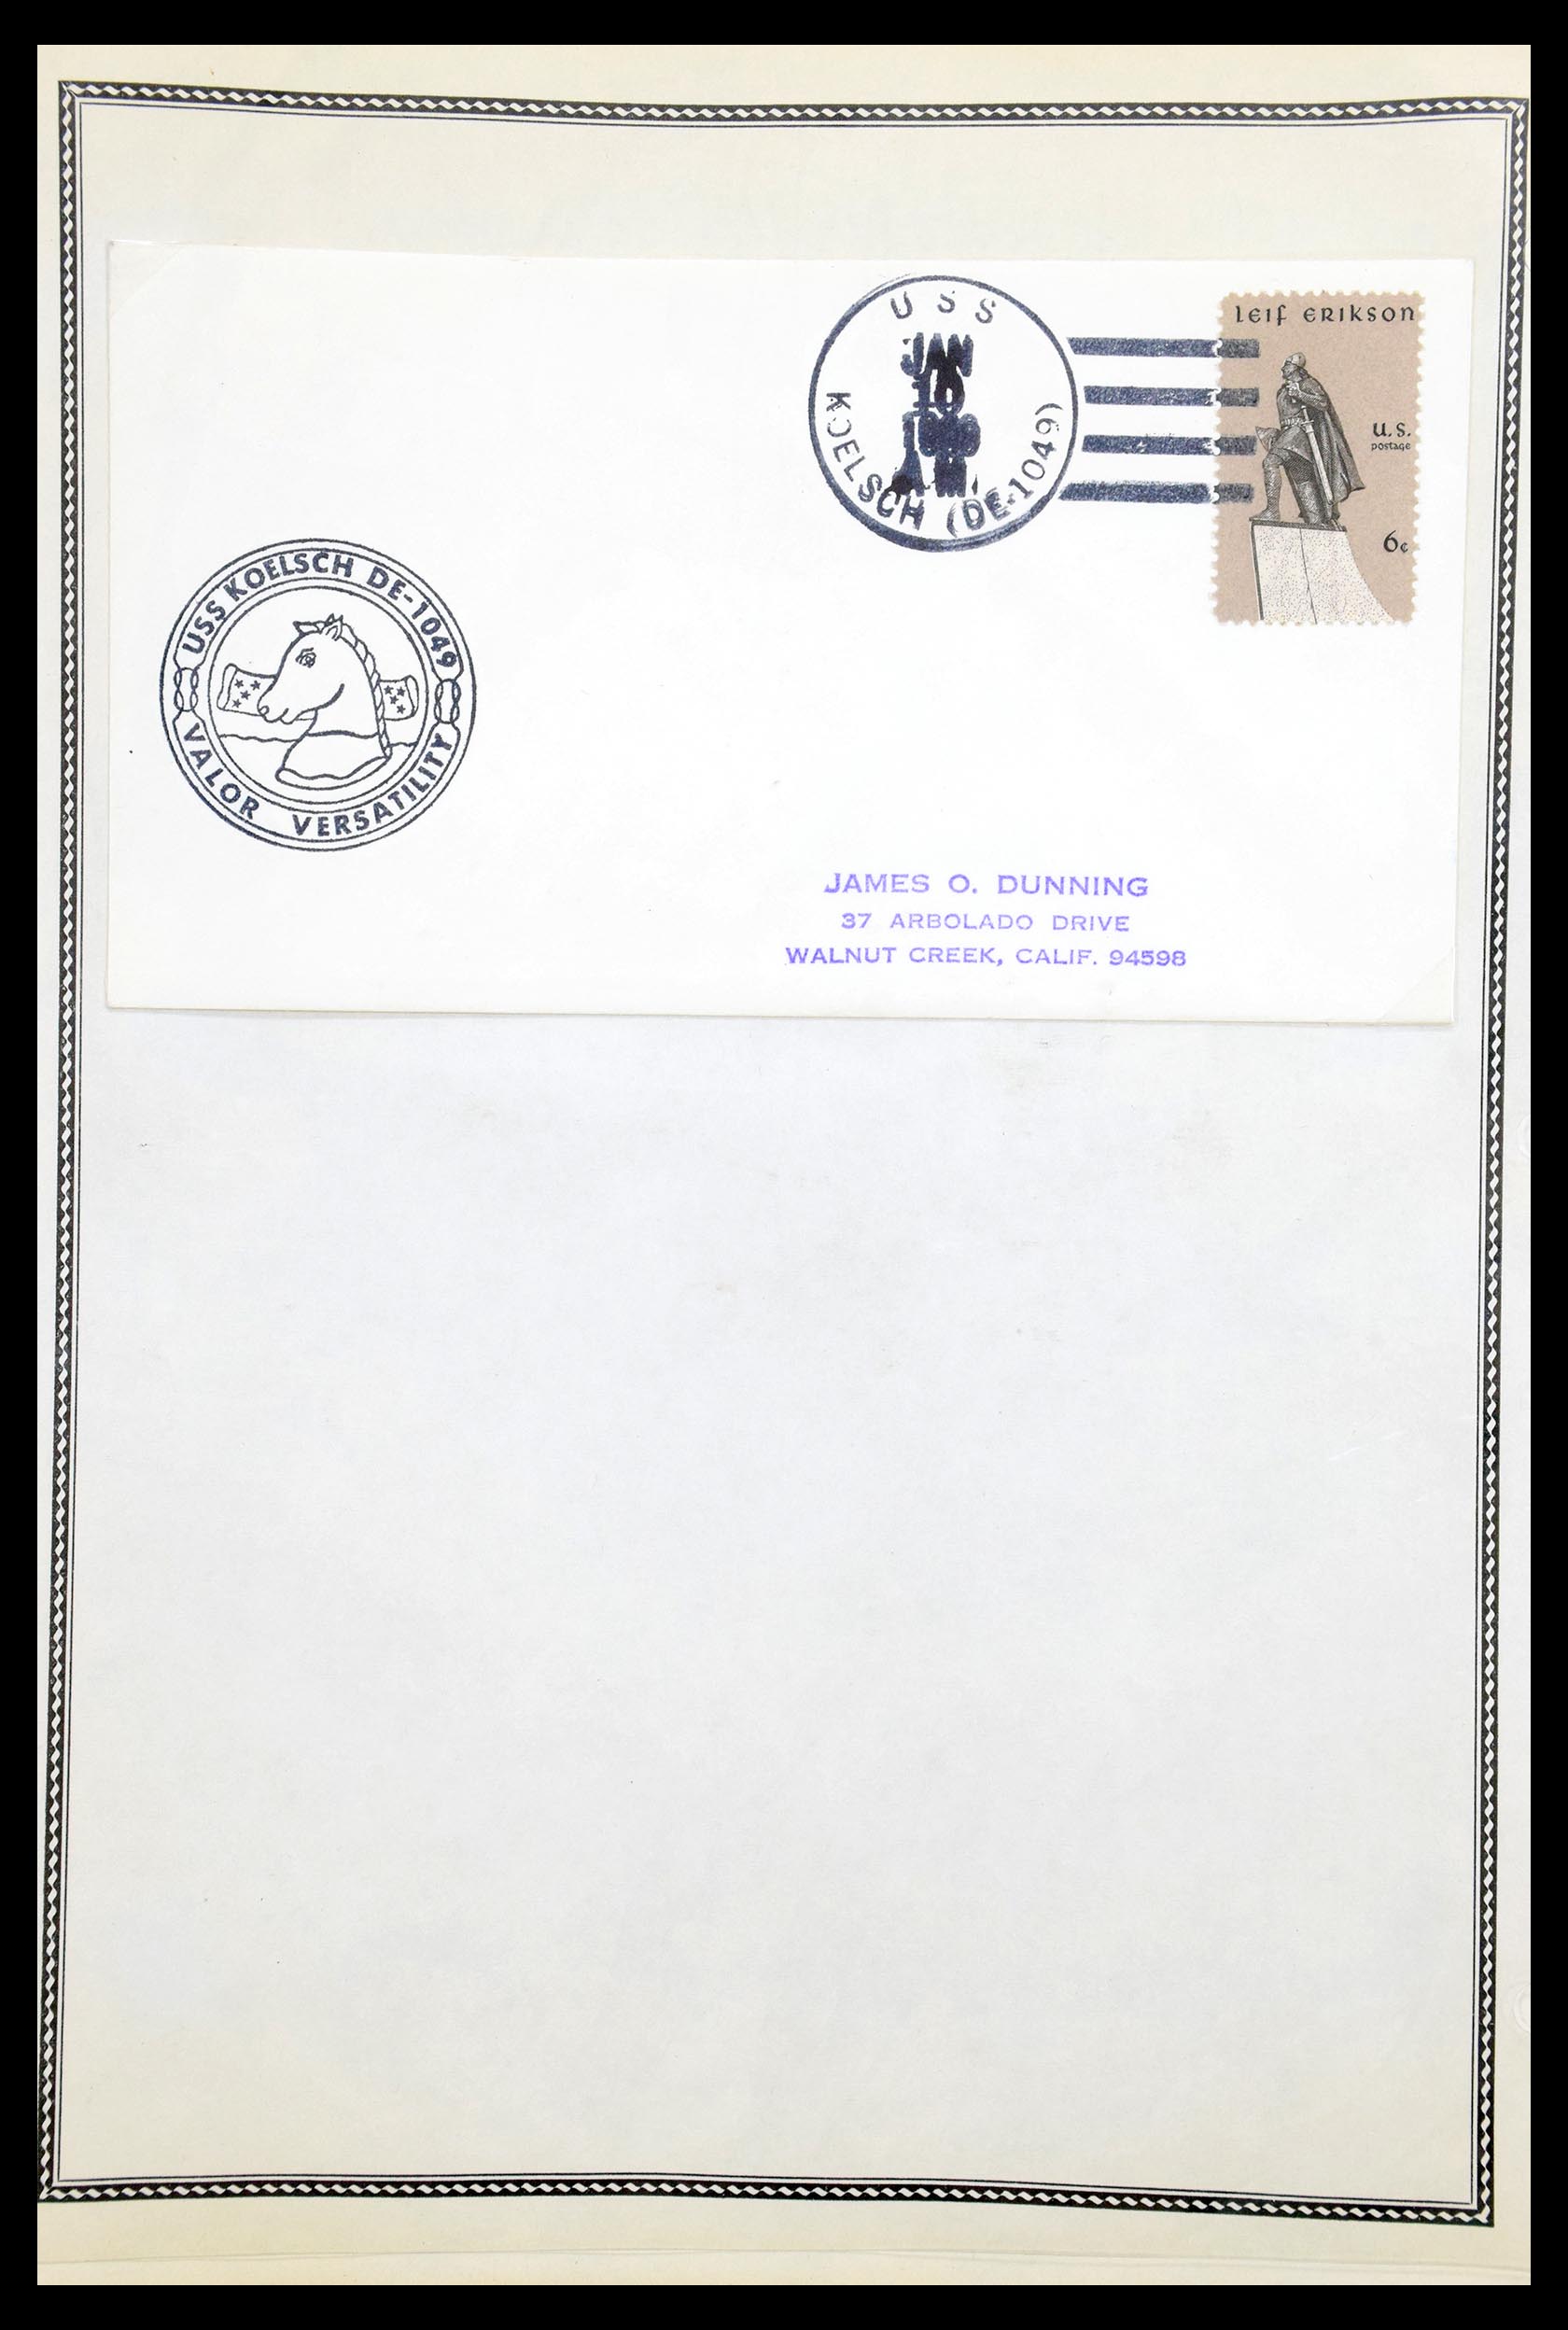 30341 082 - 30341 USA scheepspost brieven 1930-1970.